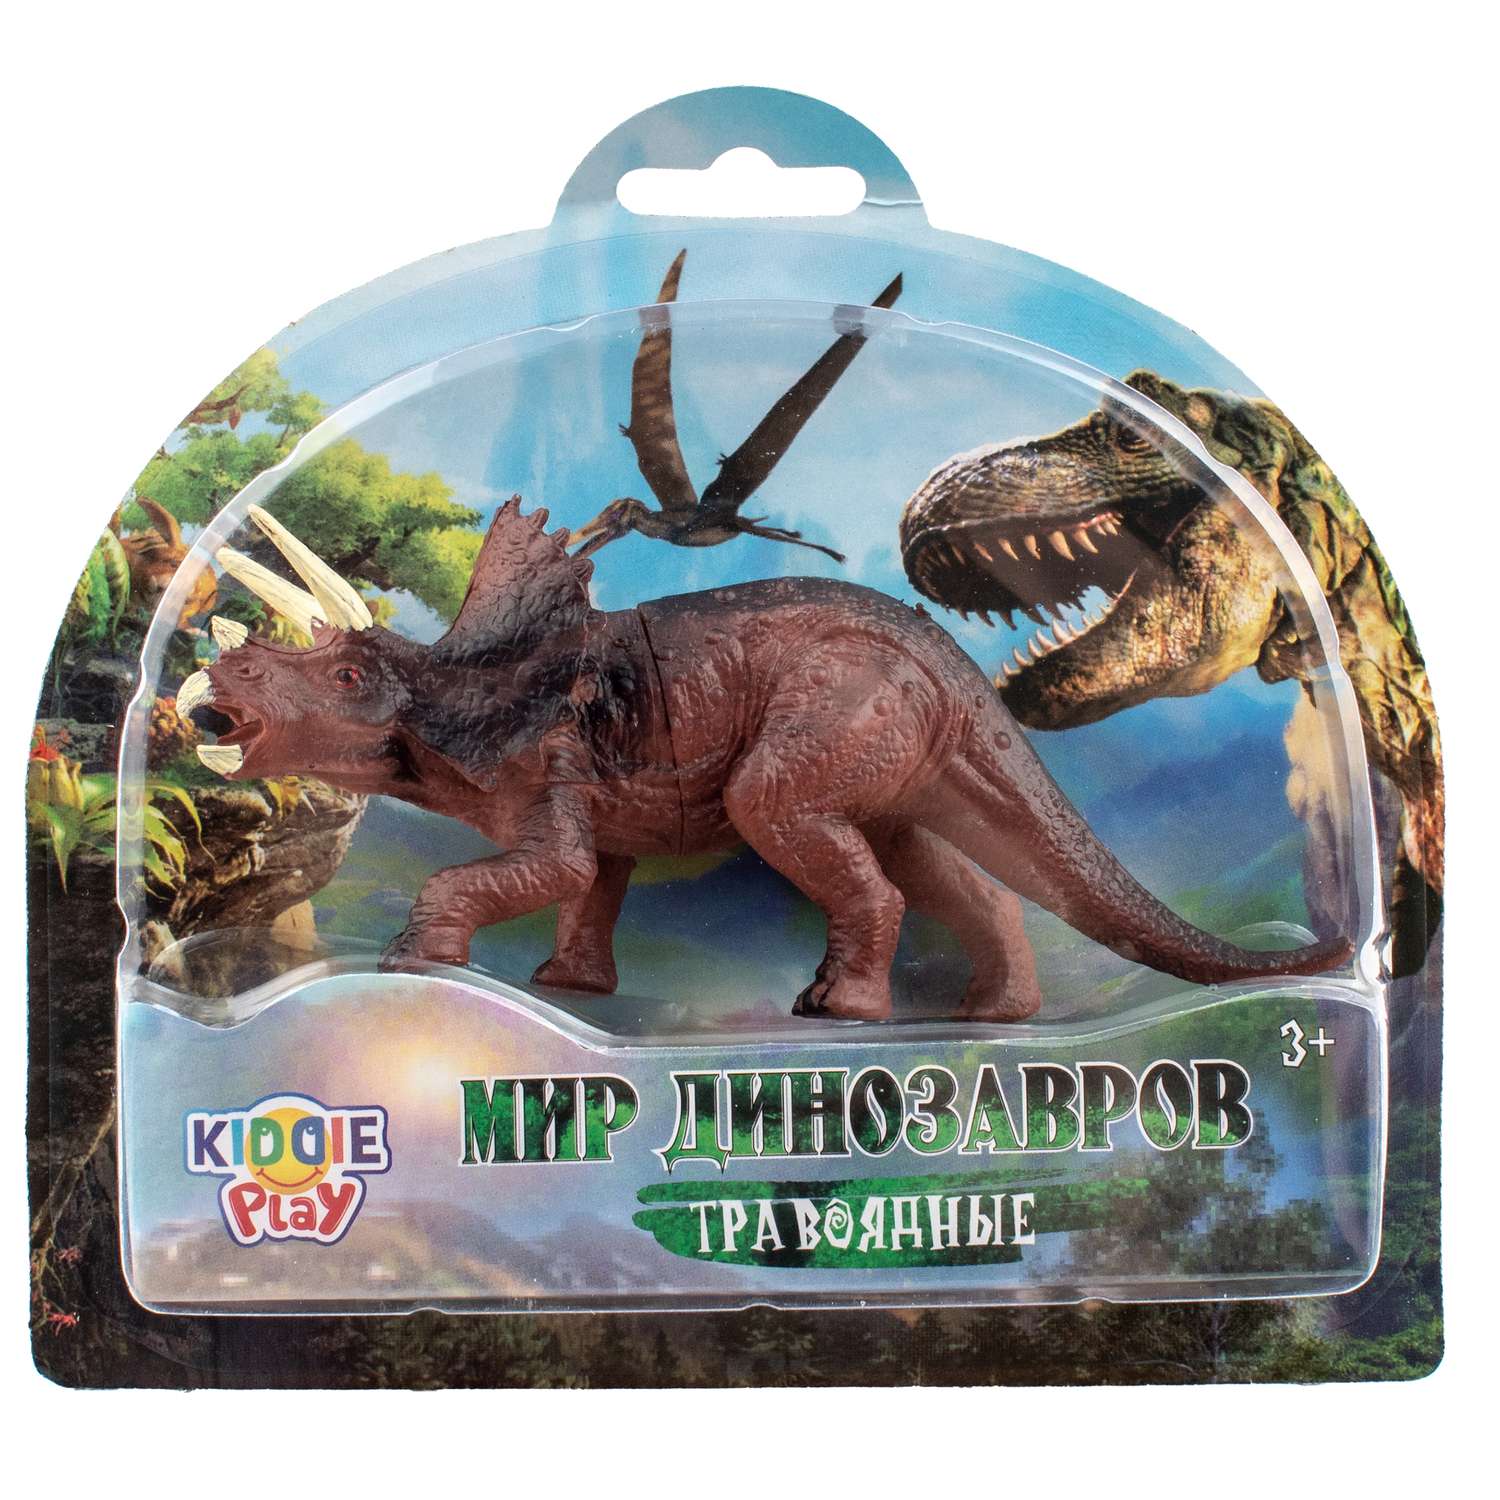 Игрушка KiddiePlay Динозавр травоядный в ассортименте 12602 - фото 5